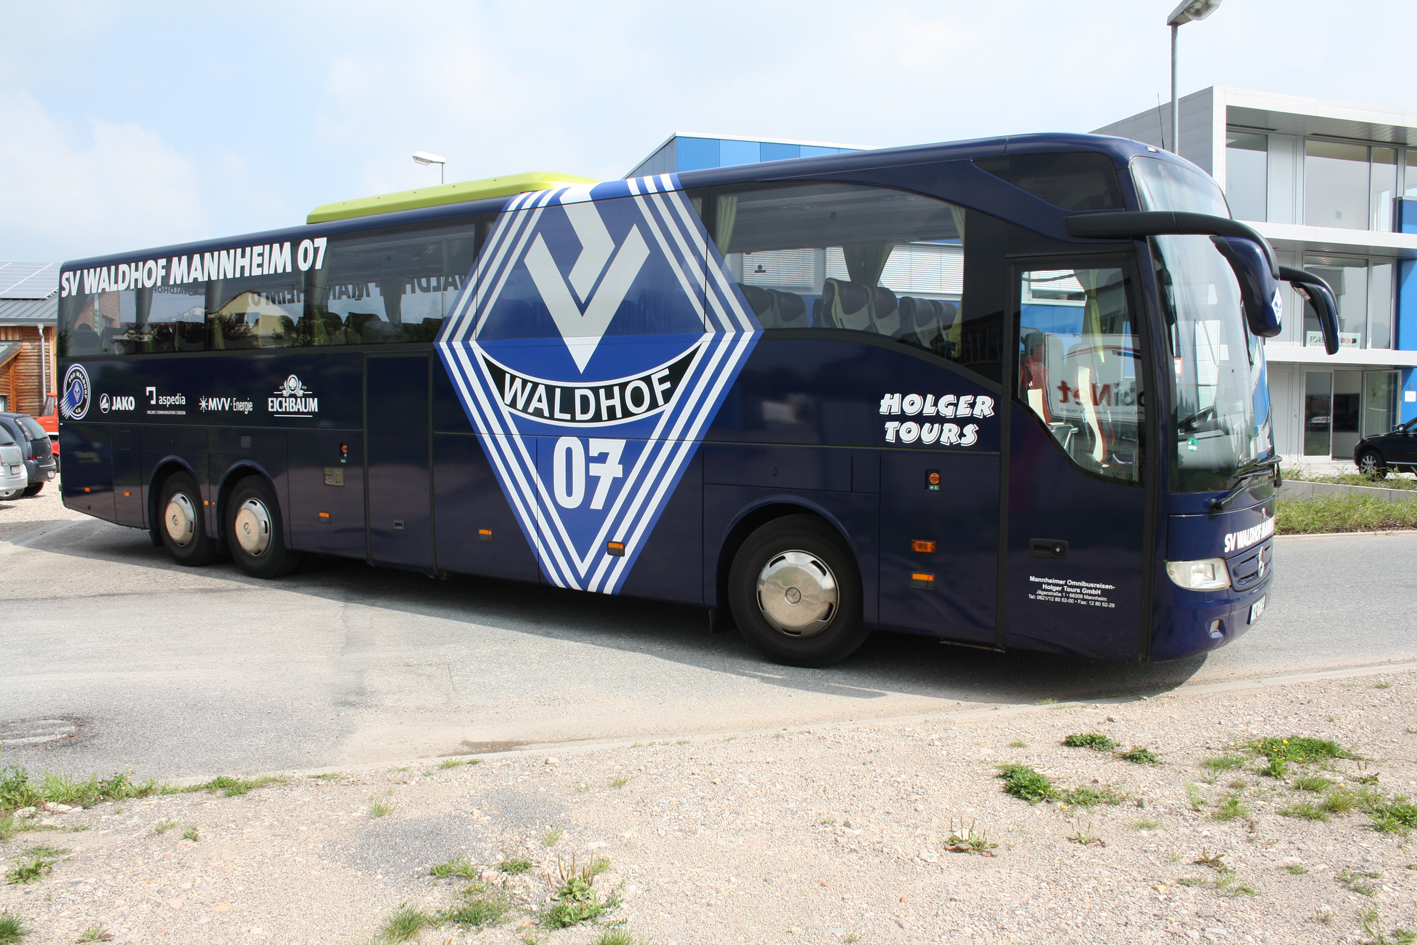 SVW-Mannschaftsbus mit neuem Design / PRO Waldhof schulterte Kosten